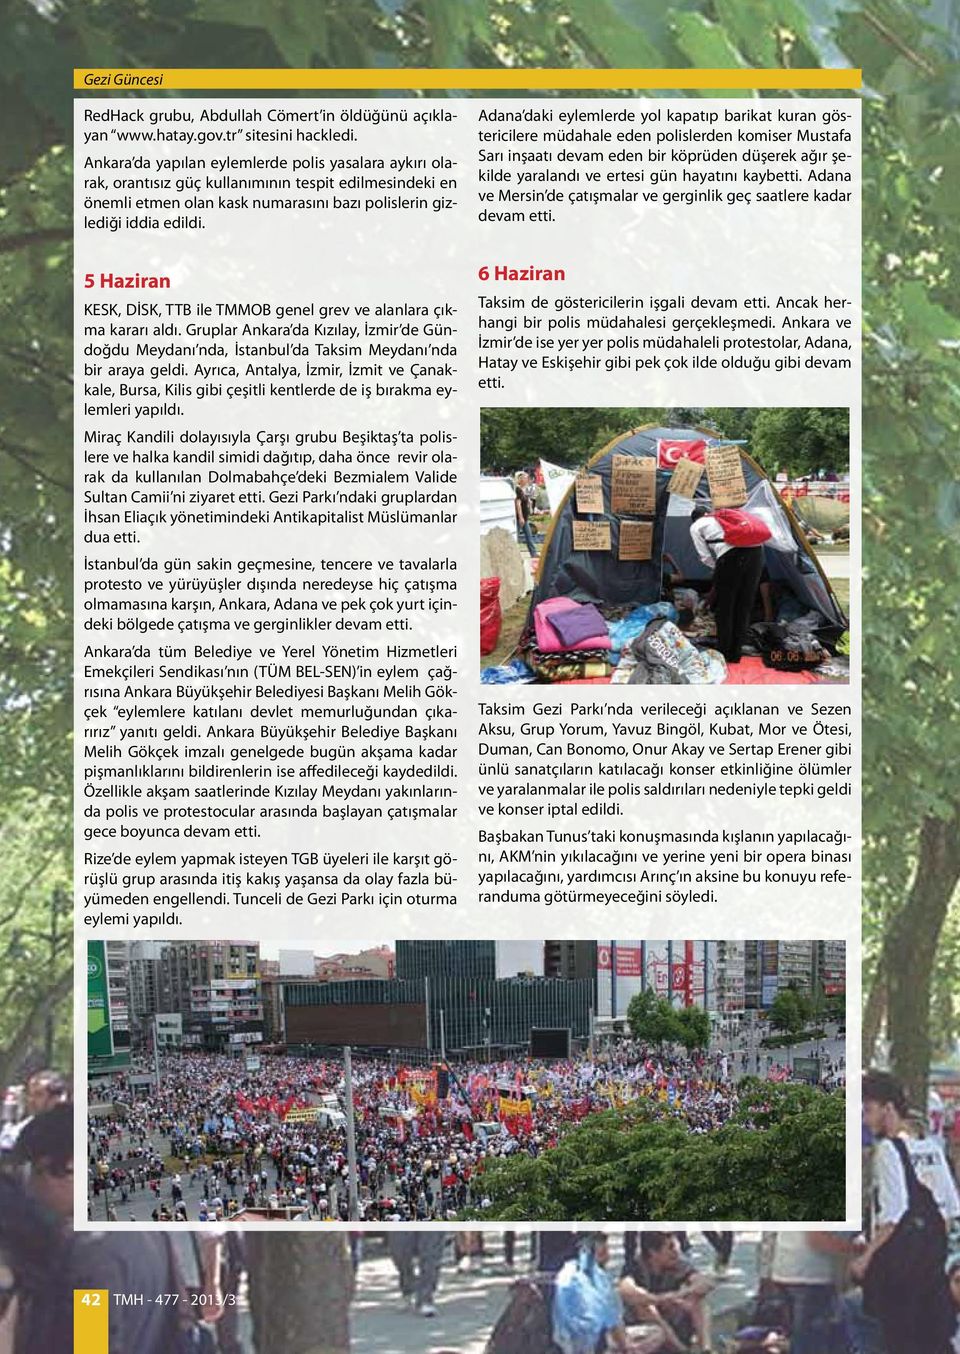 5 Haziran KESK, DİSK, TTB ile TMMOB genel grev ve alanlara çıkma kararı aldı. Gruplar Ankara da Kızılay, İzmir de Gündoğdu Meydanı nda, İstanbul da Taksim Meydanı nda bir araya geldi.